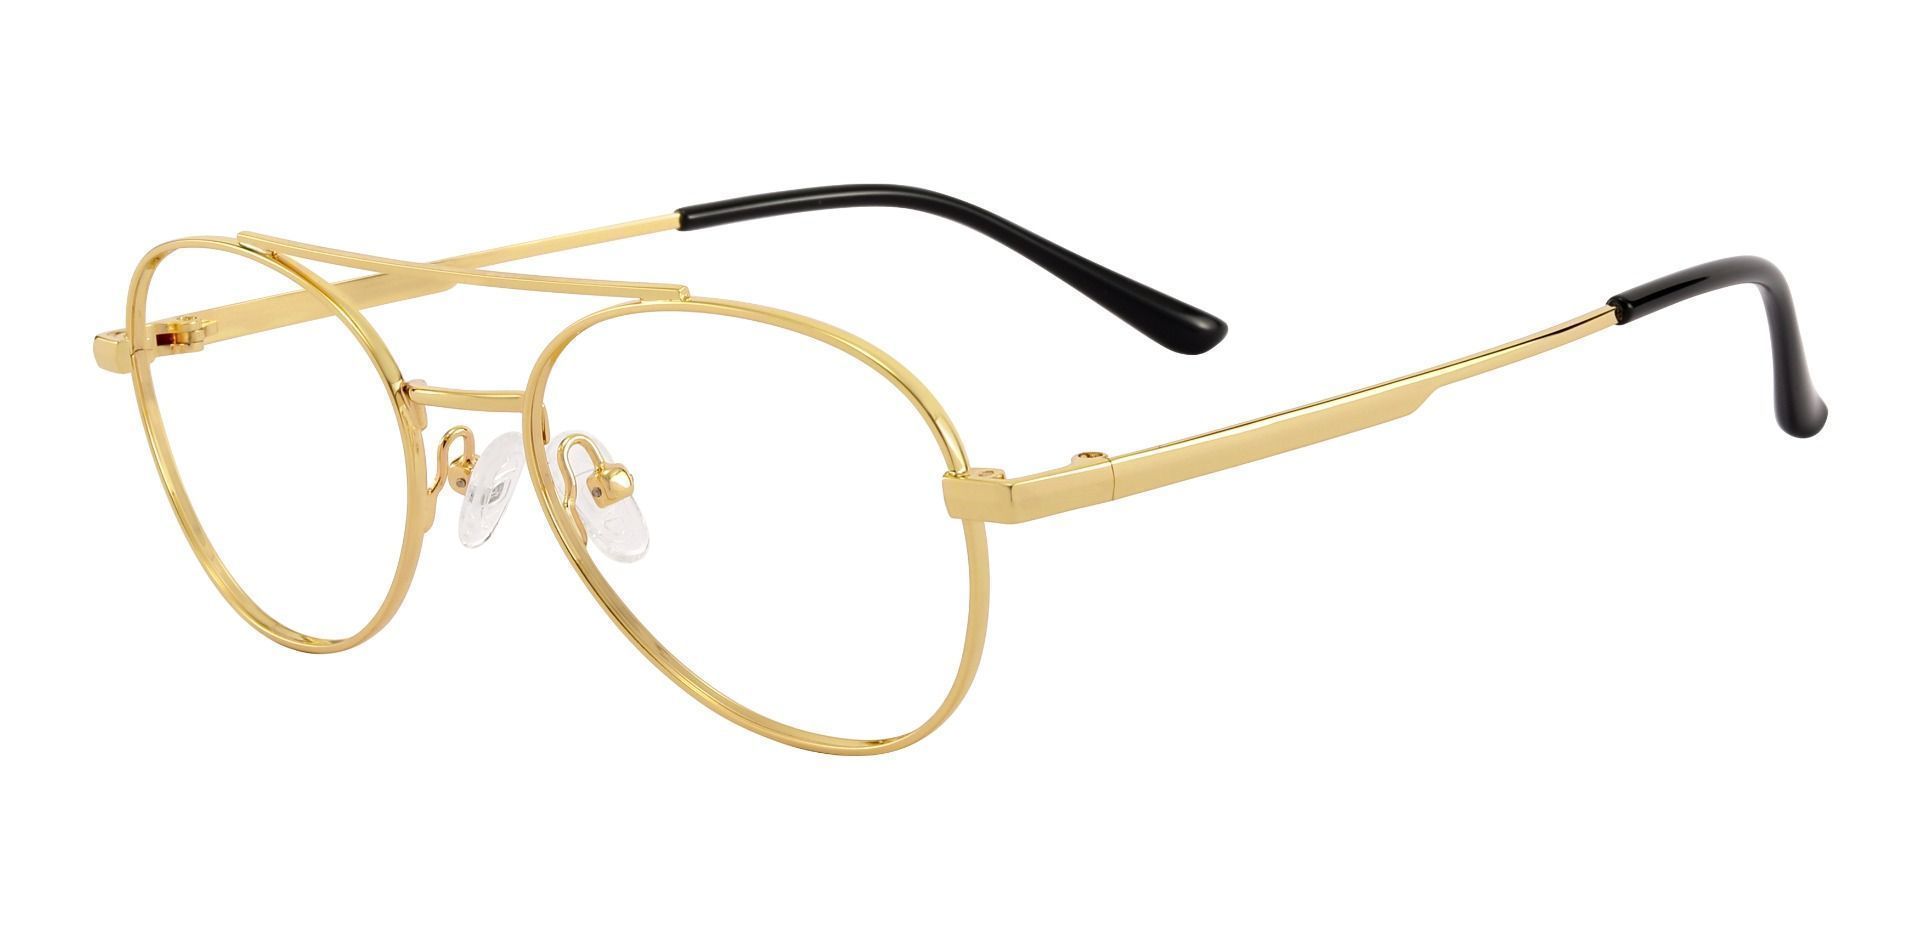 Hinton Aviator Non-Rx Glasses - Gold